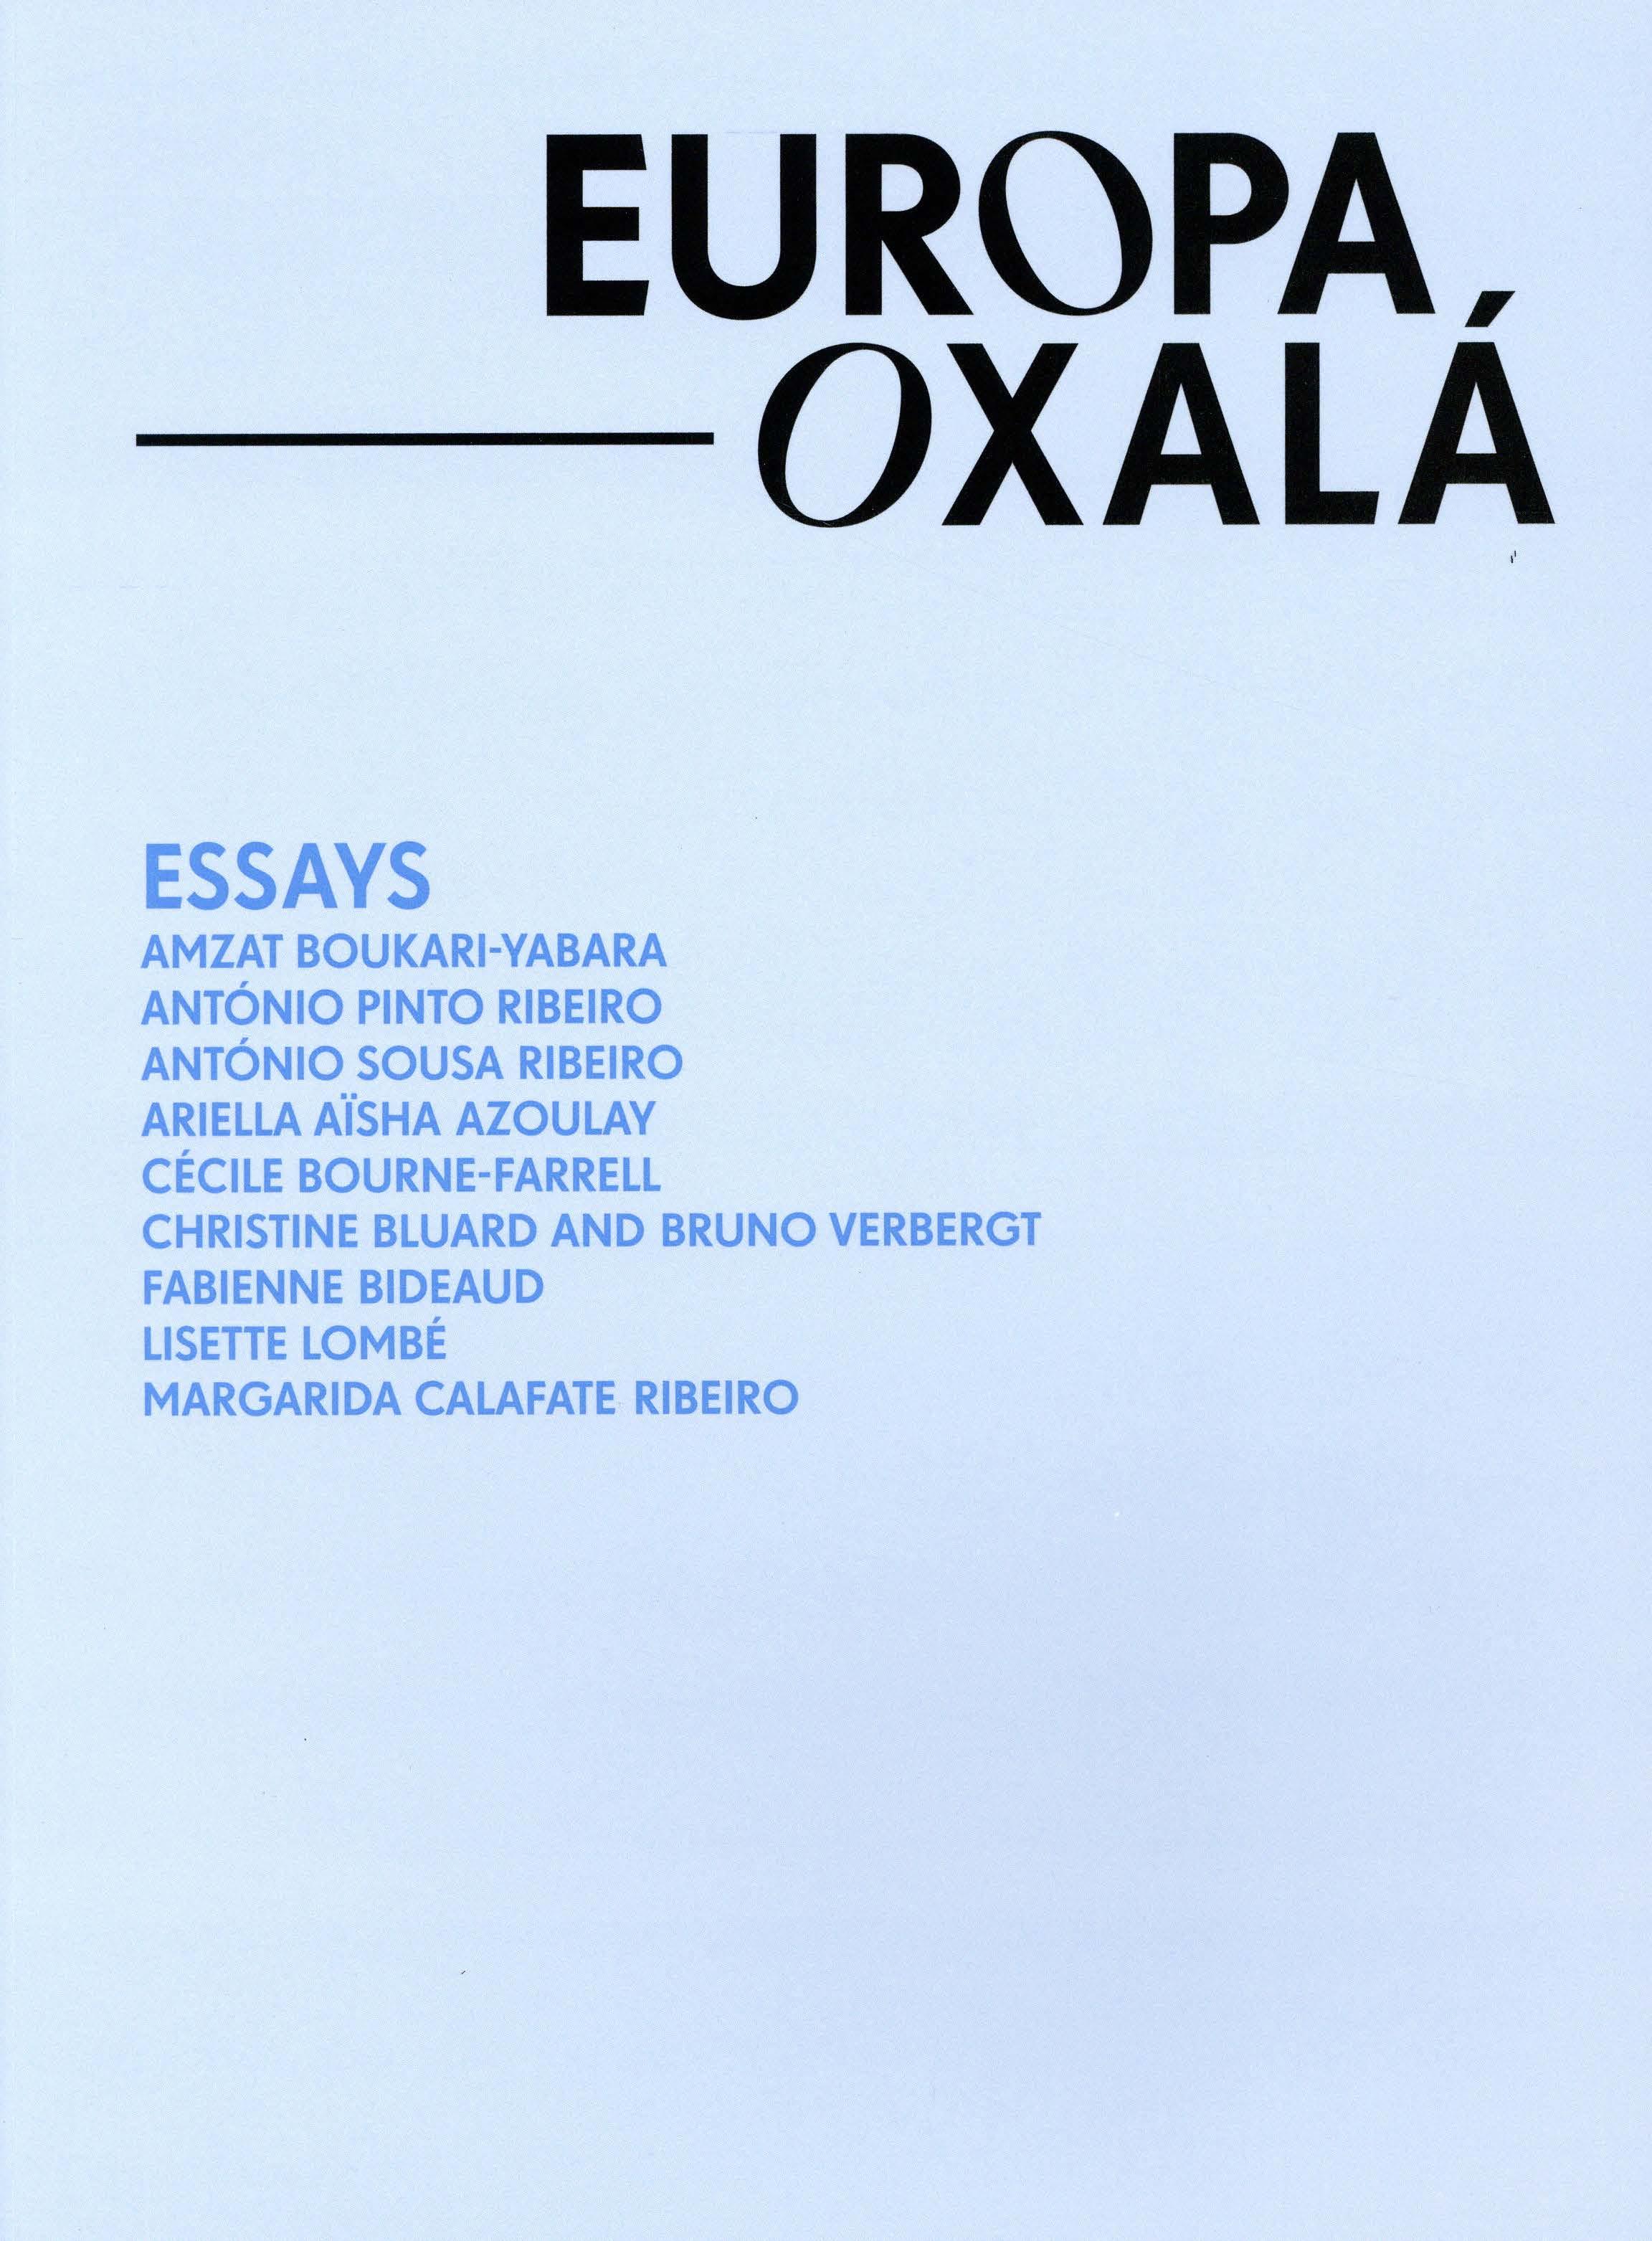 Europa Oxalá. Essays